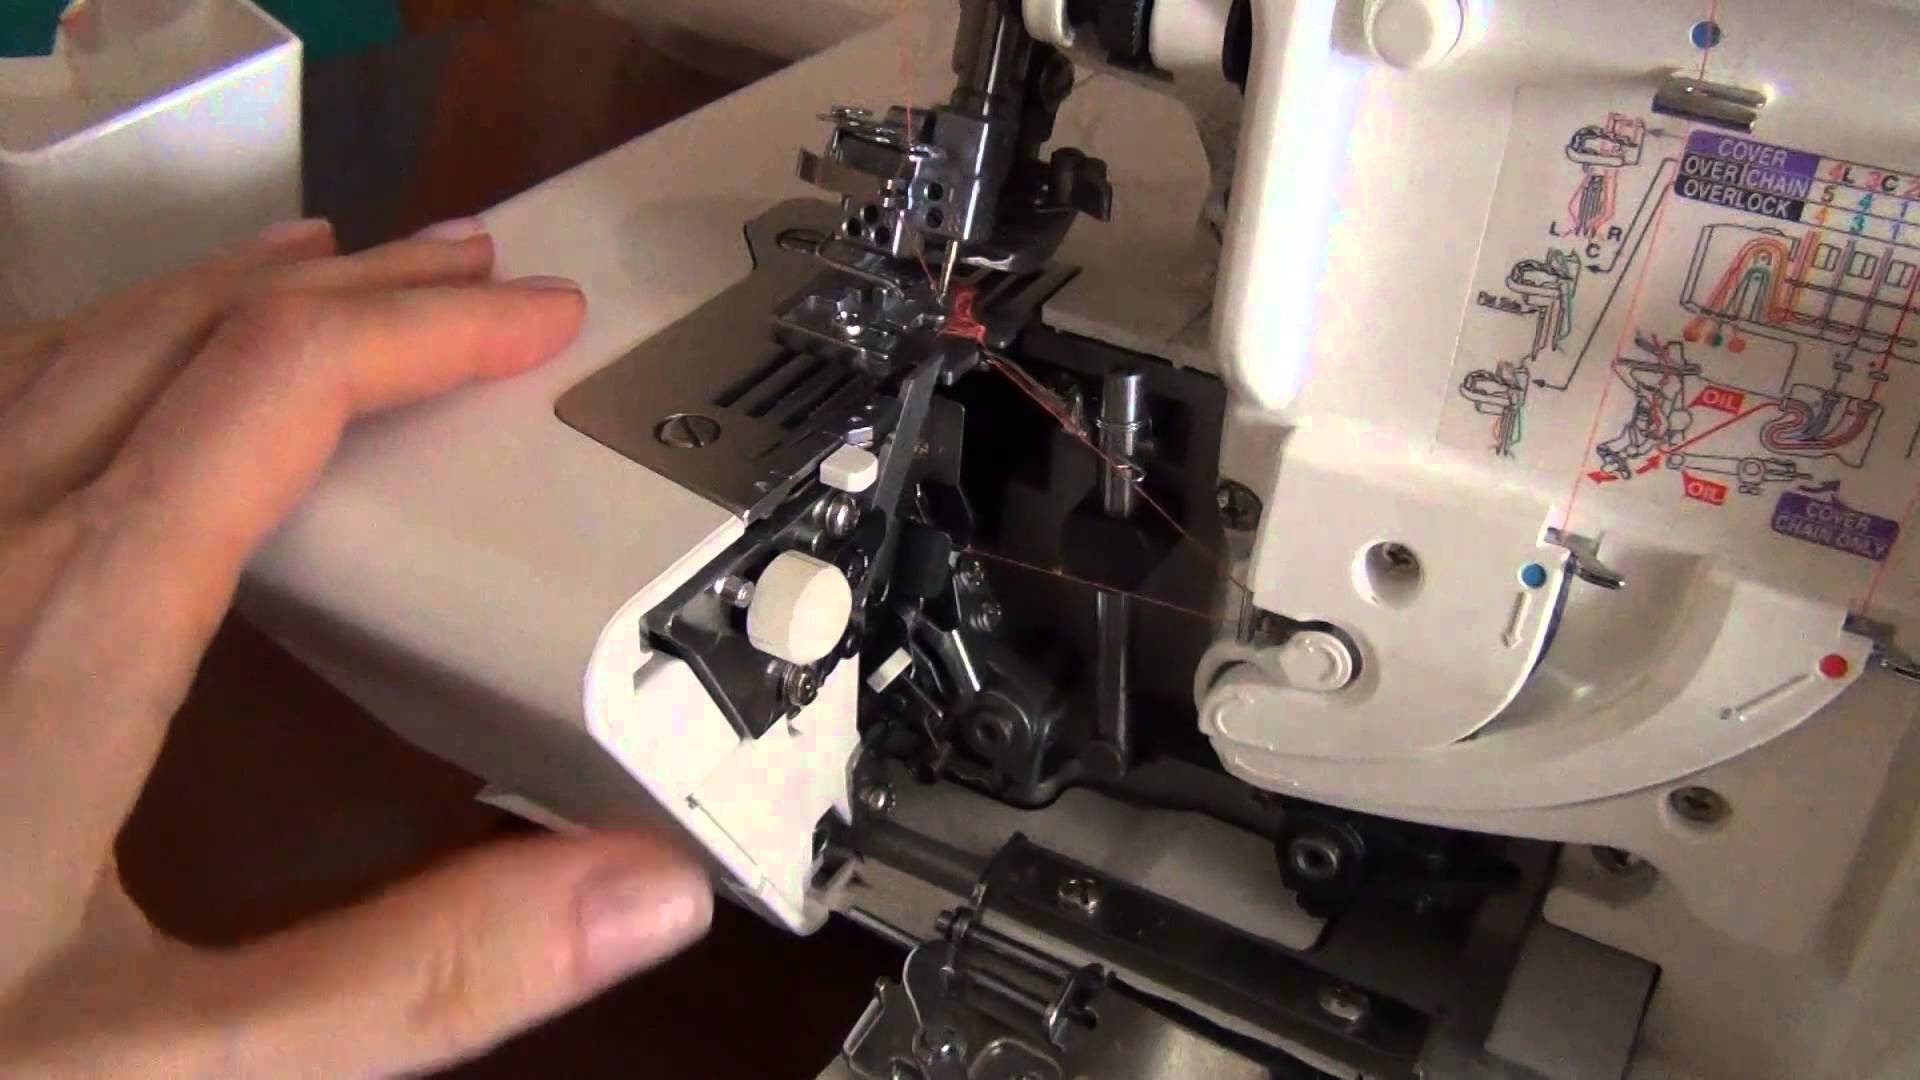 Ремонт швейных машин джаноме, запчасти к швейным машинам janome | портал о компьютерах и бытовой технике